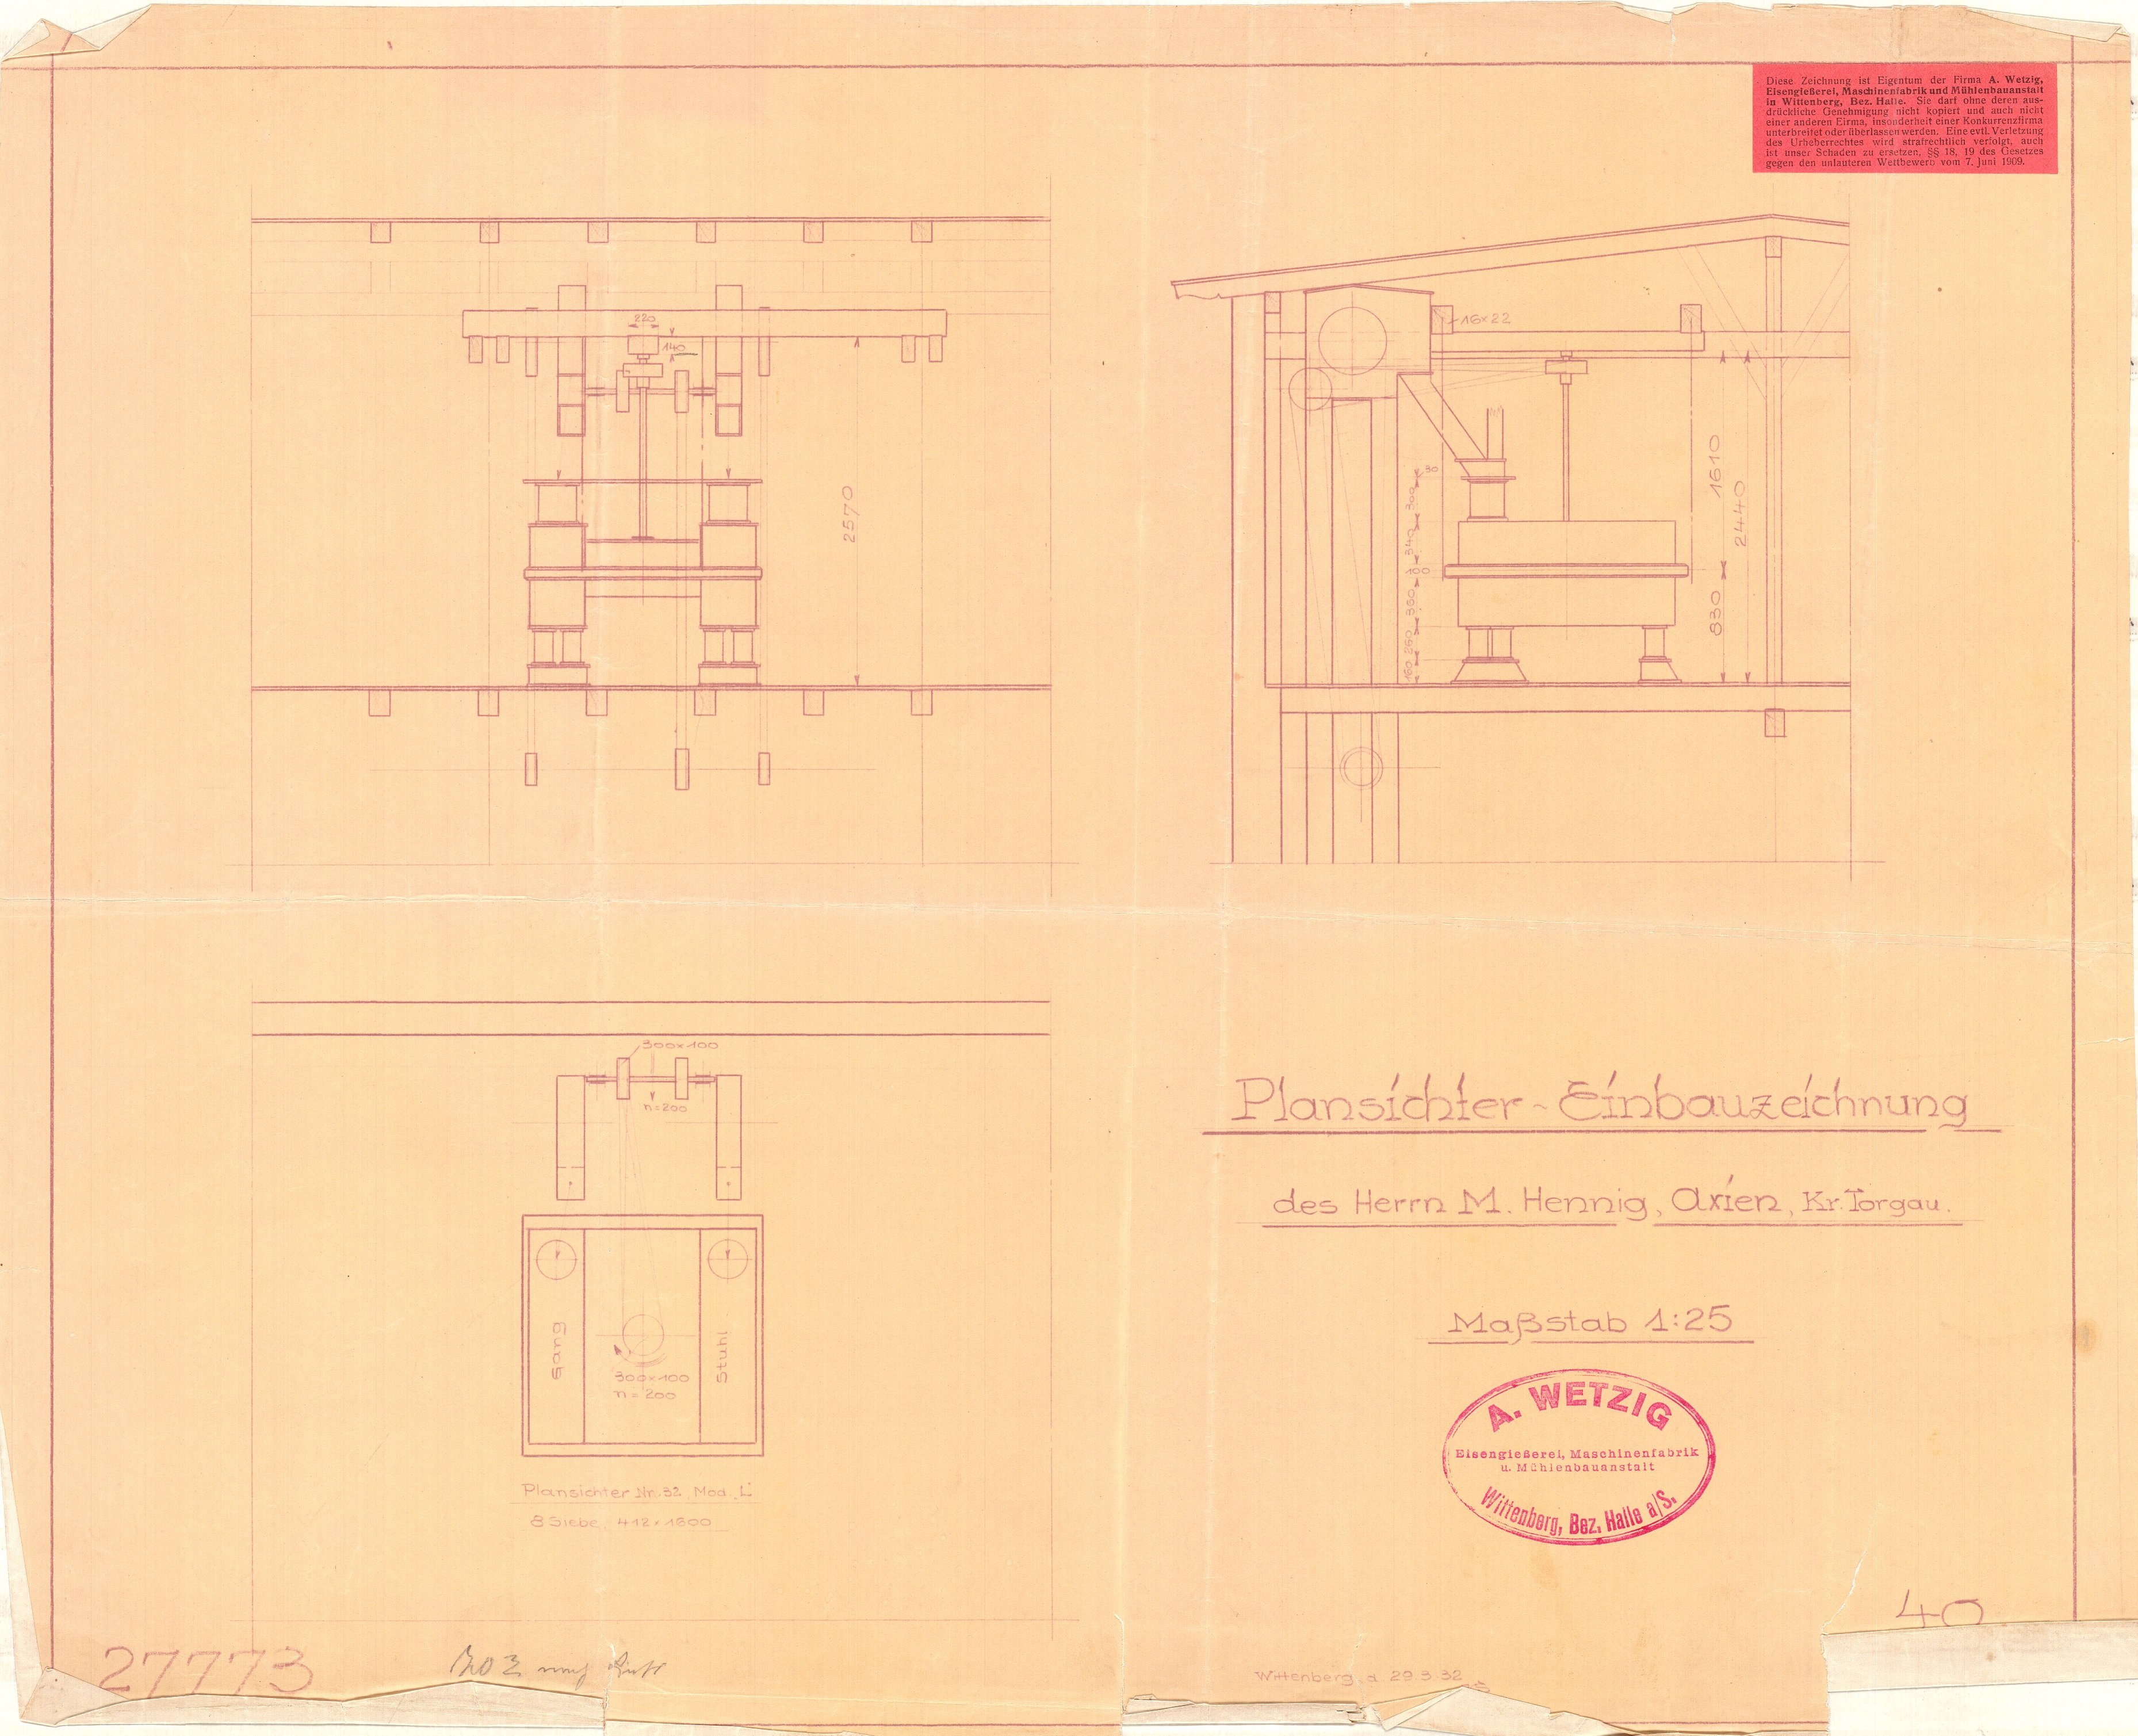 Plansichter-Einbauzeichnung (Historische Mühle von Sanssouci CC BY-NC-SA)